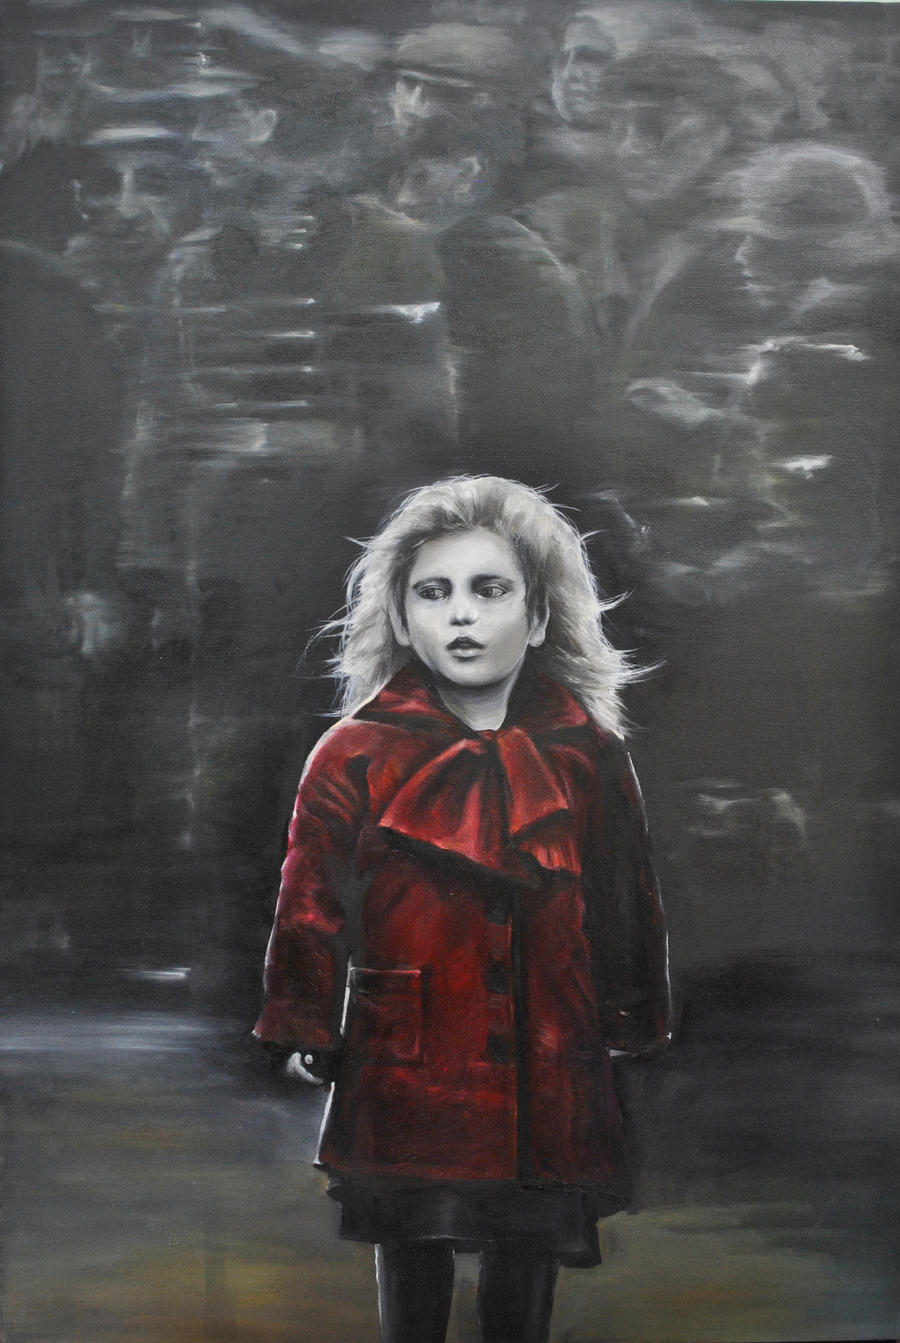 Little Girl in the Red Coat by boninuit on DeviantArt